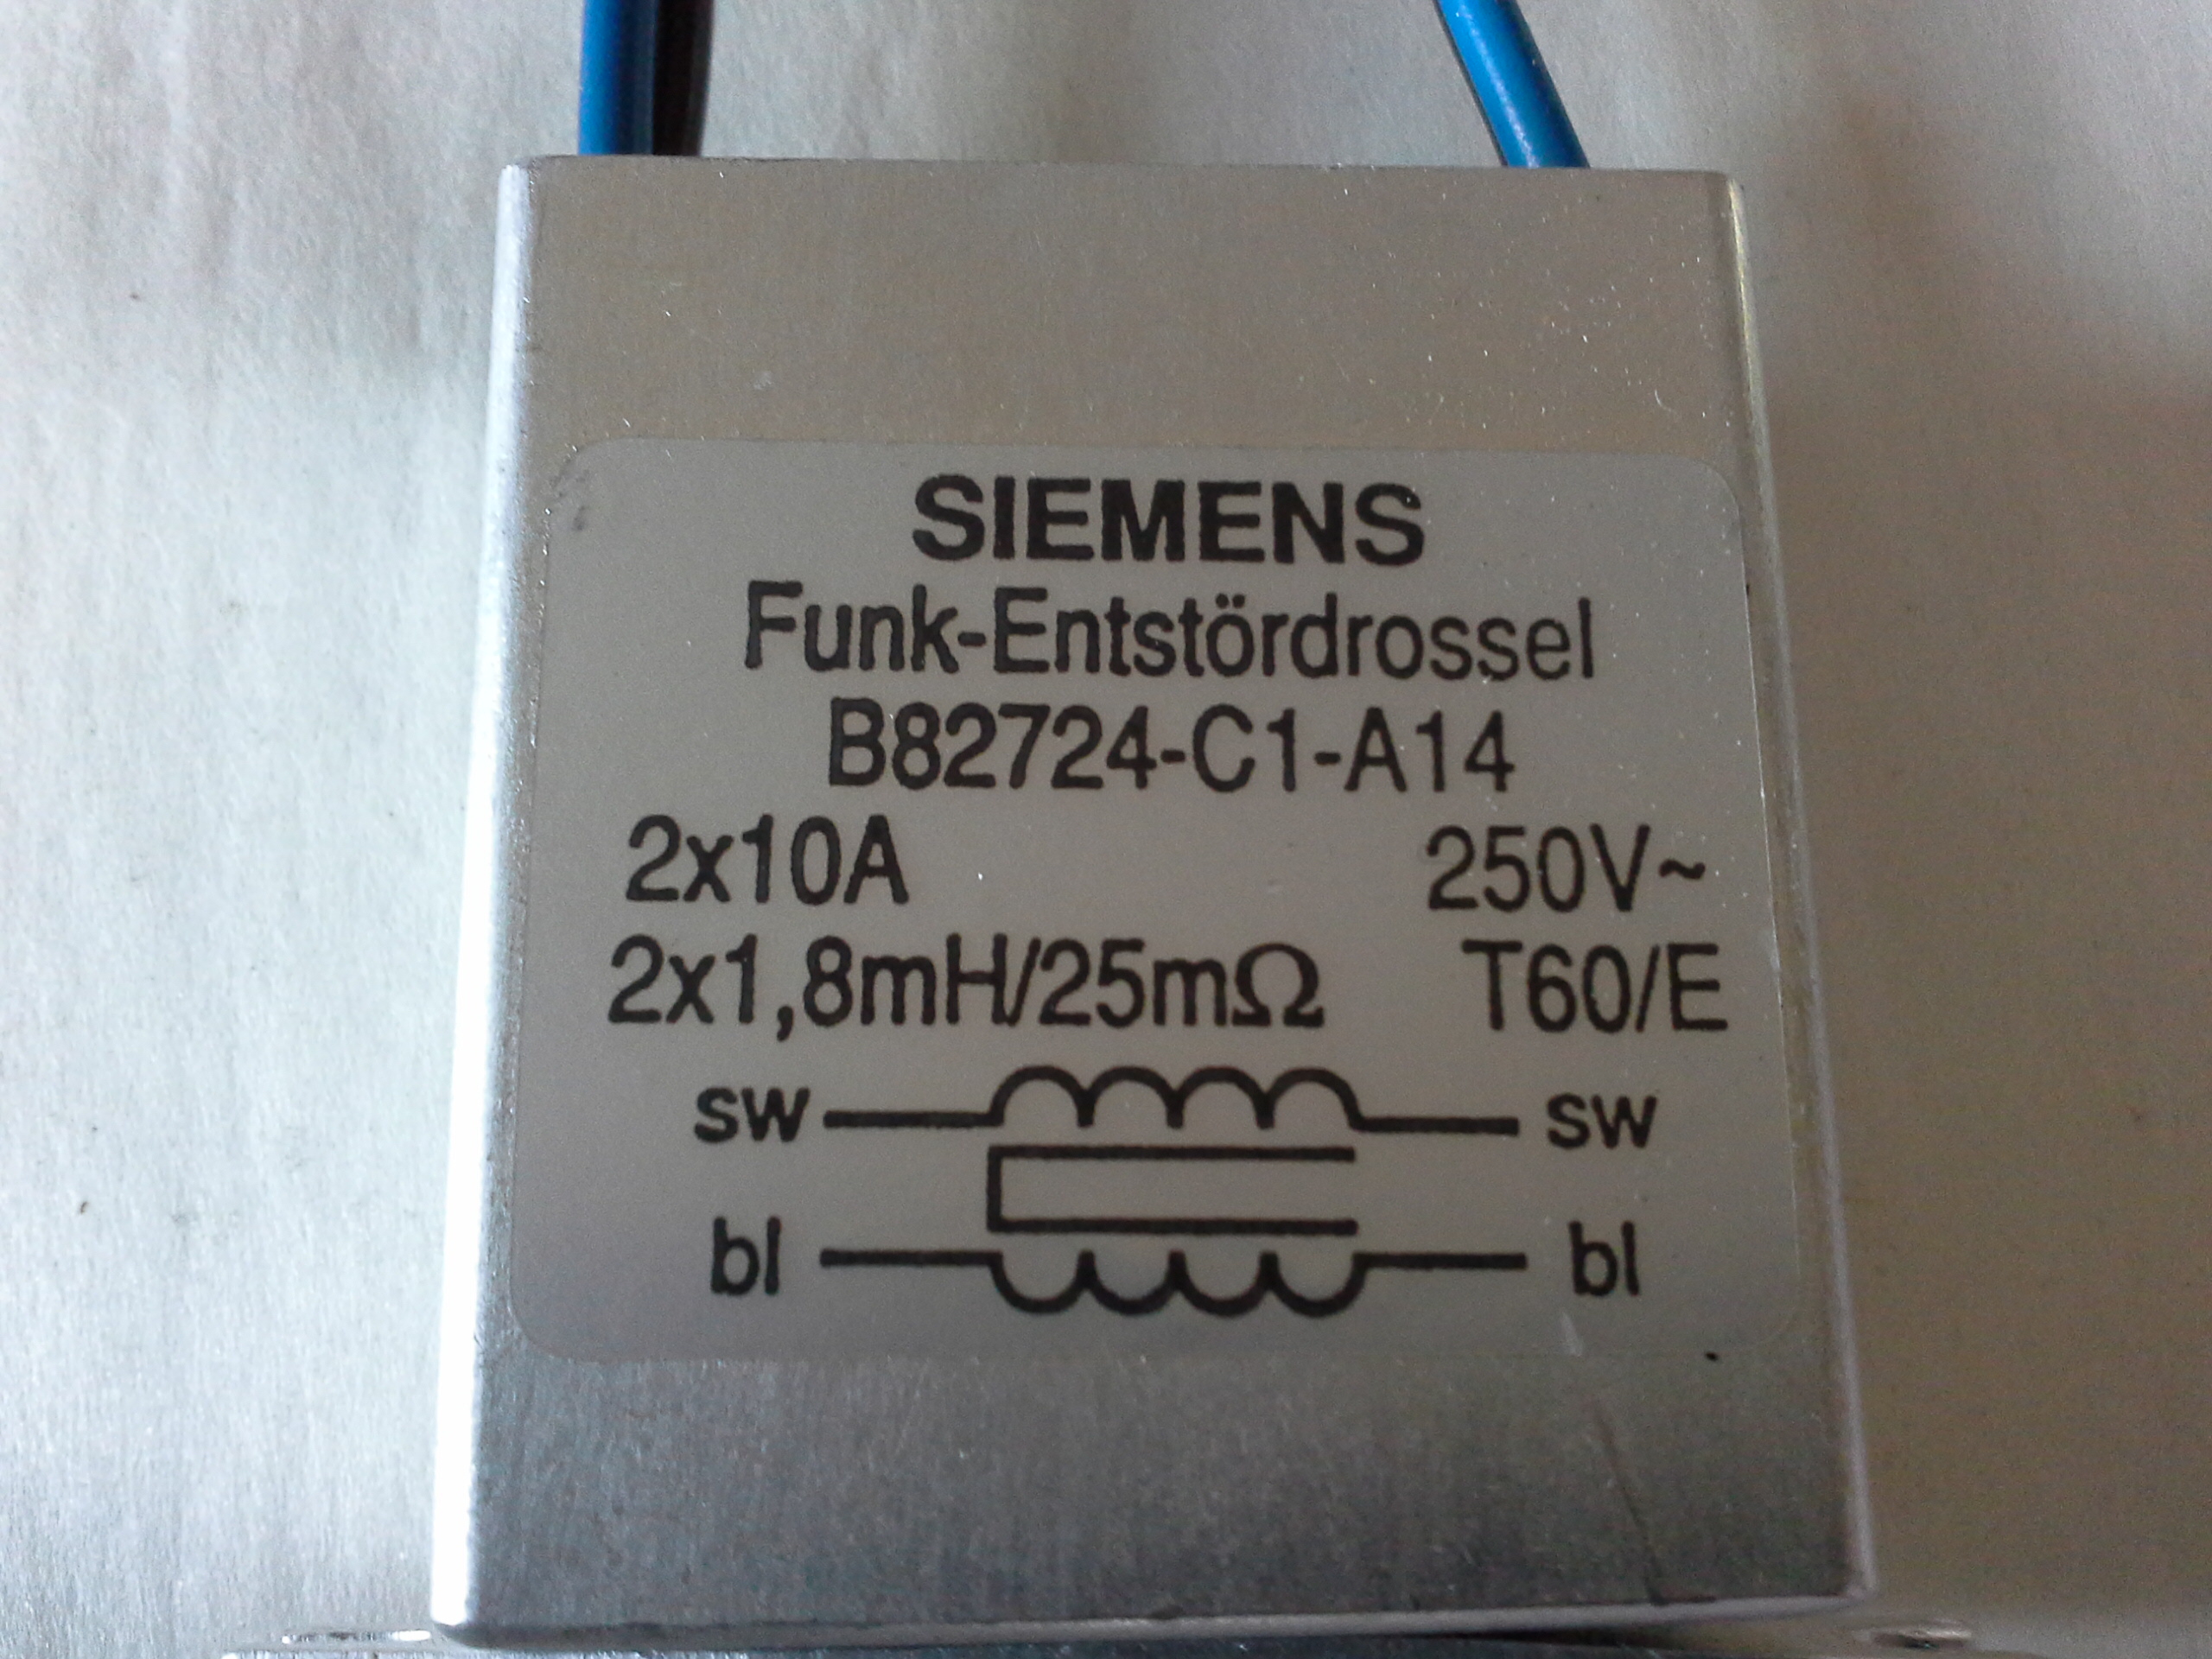 Siemens Funk-Entstördrossel B82724-C1-A14